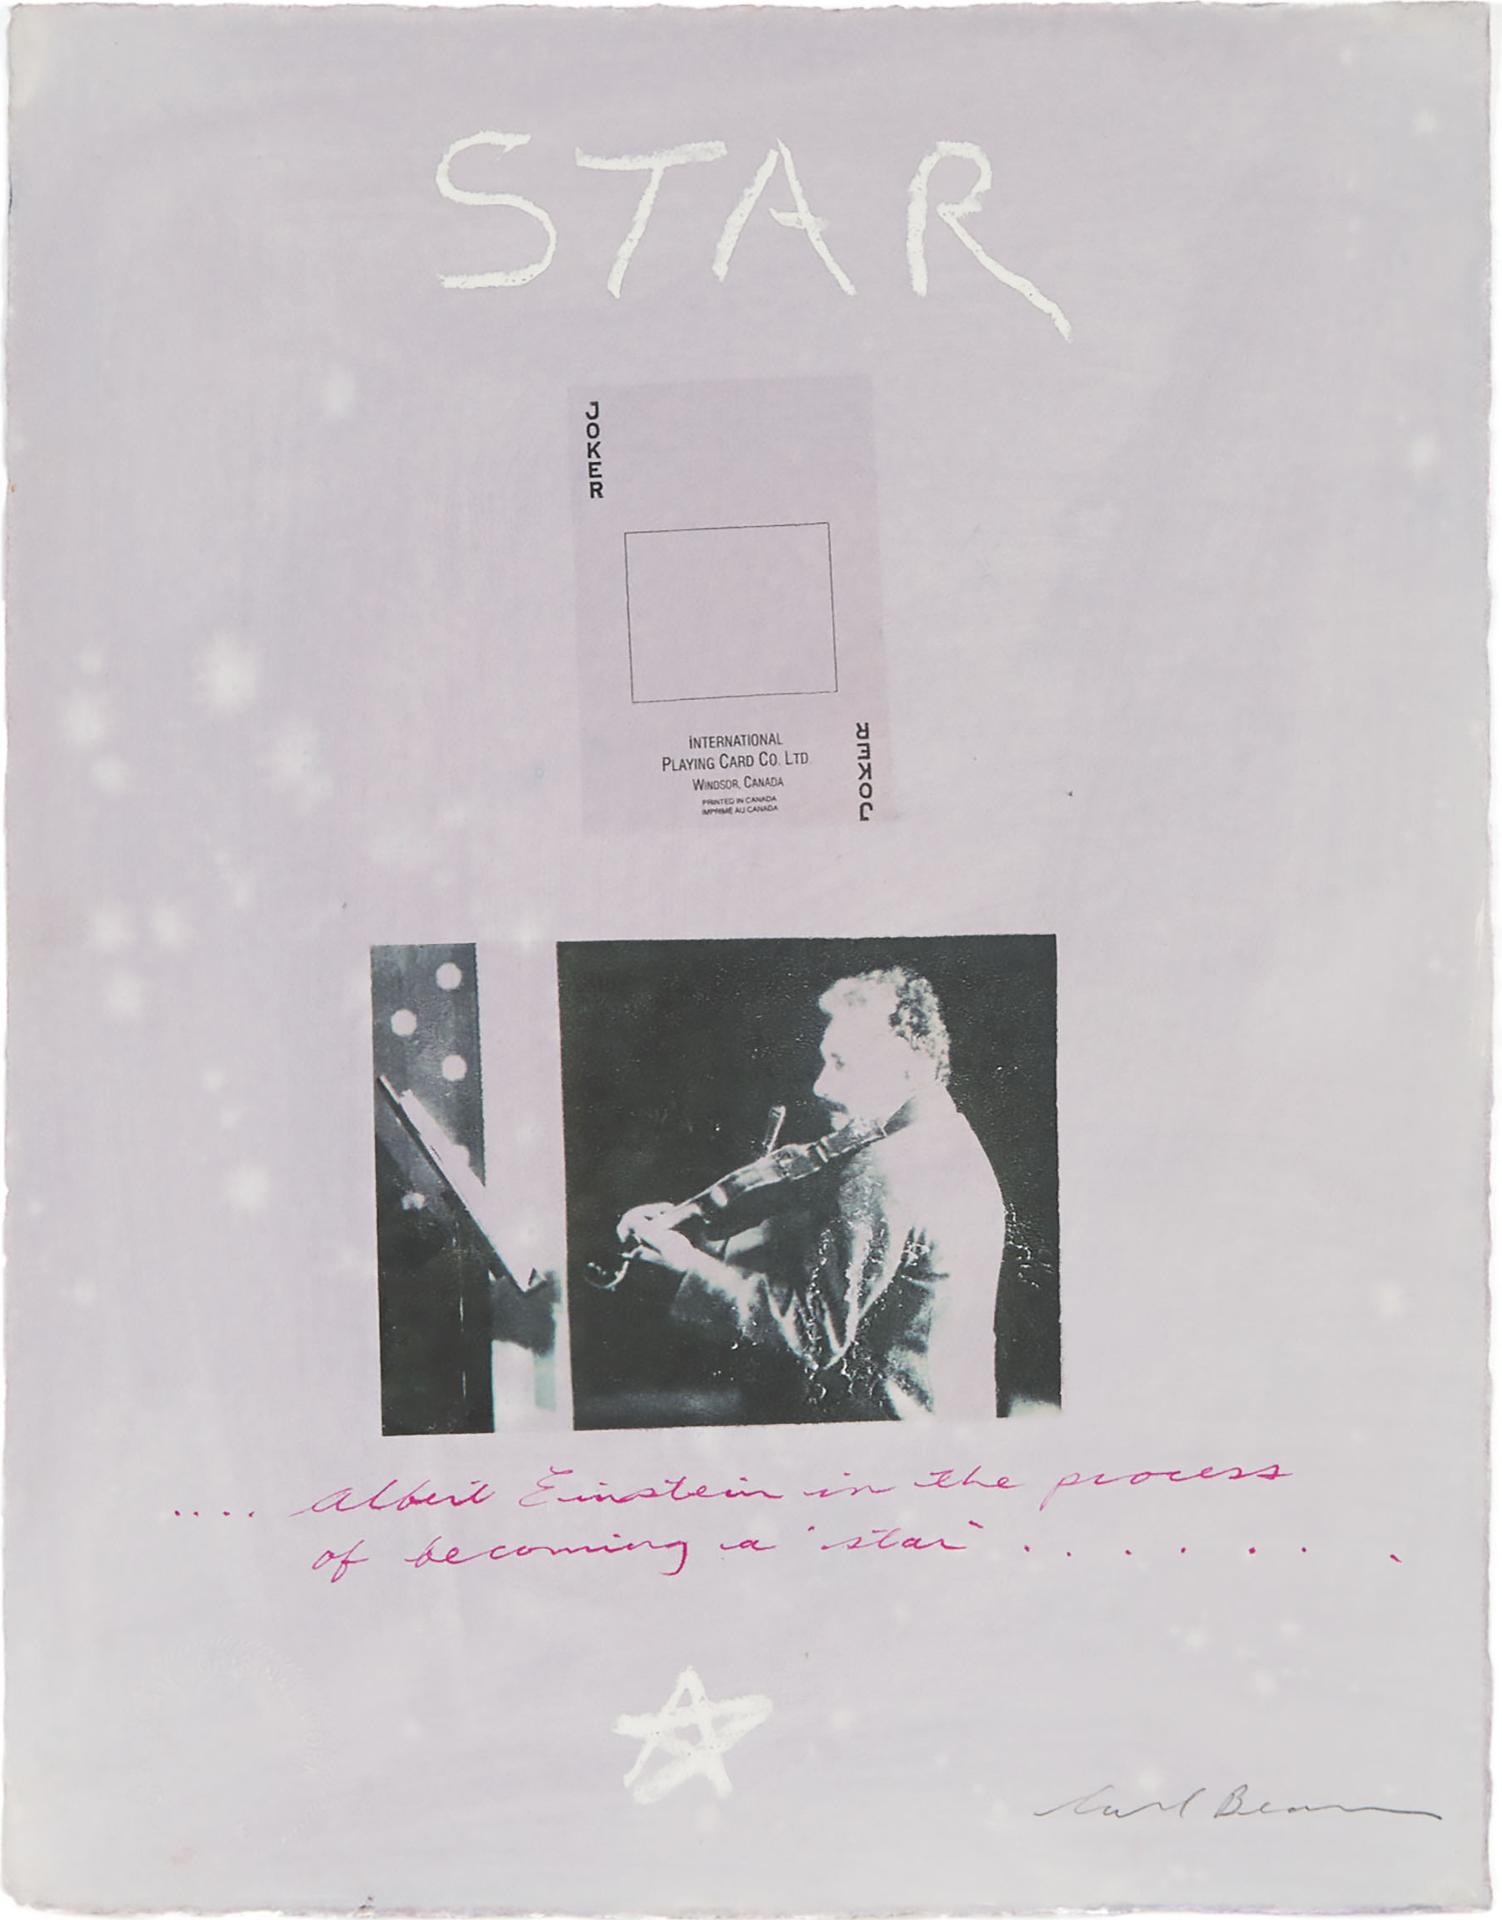 Carl Beam (1943-2005) - Star (Albert Einstein)